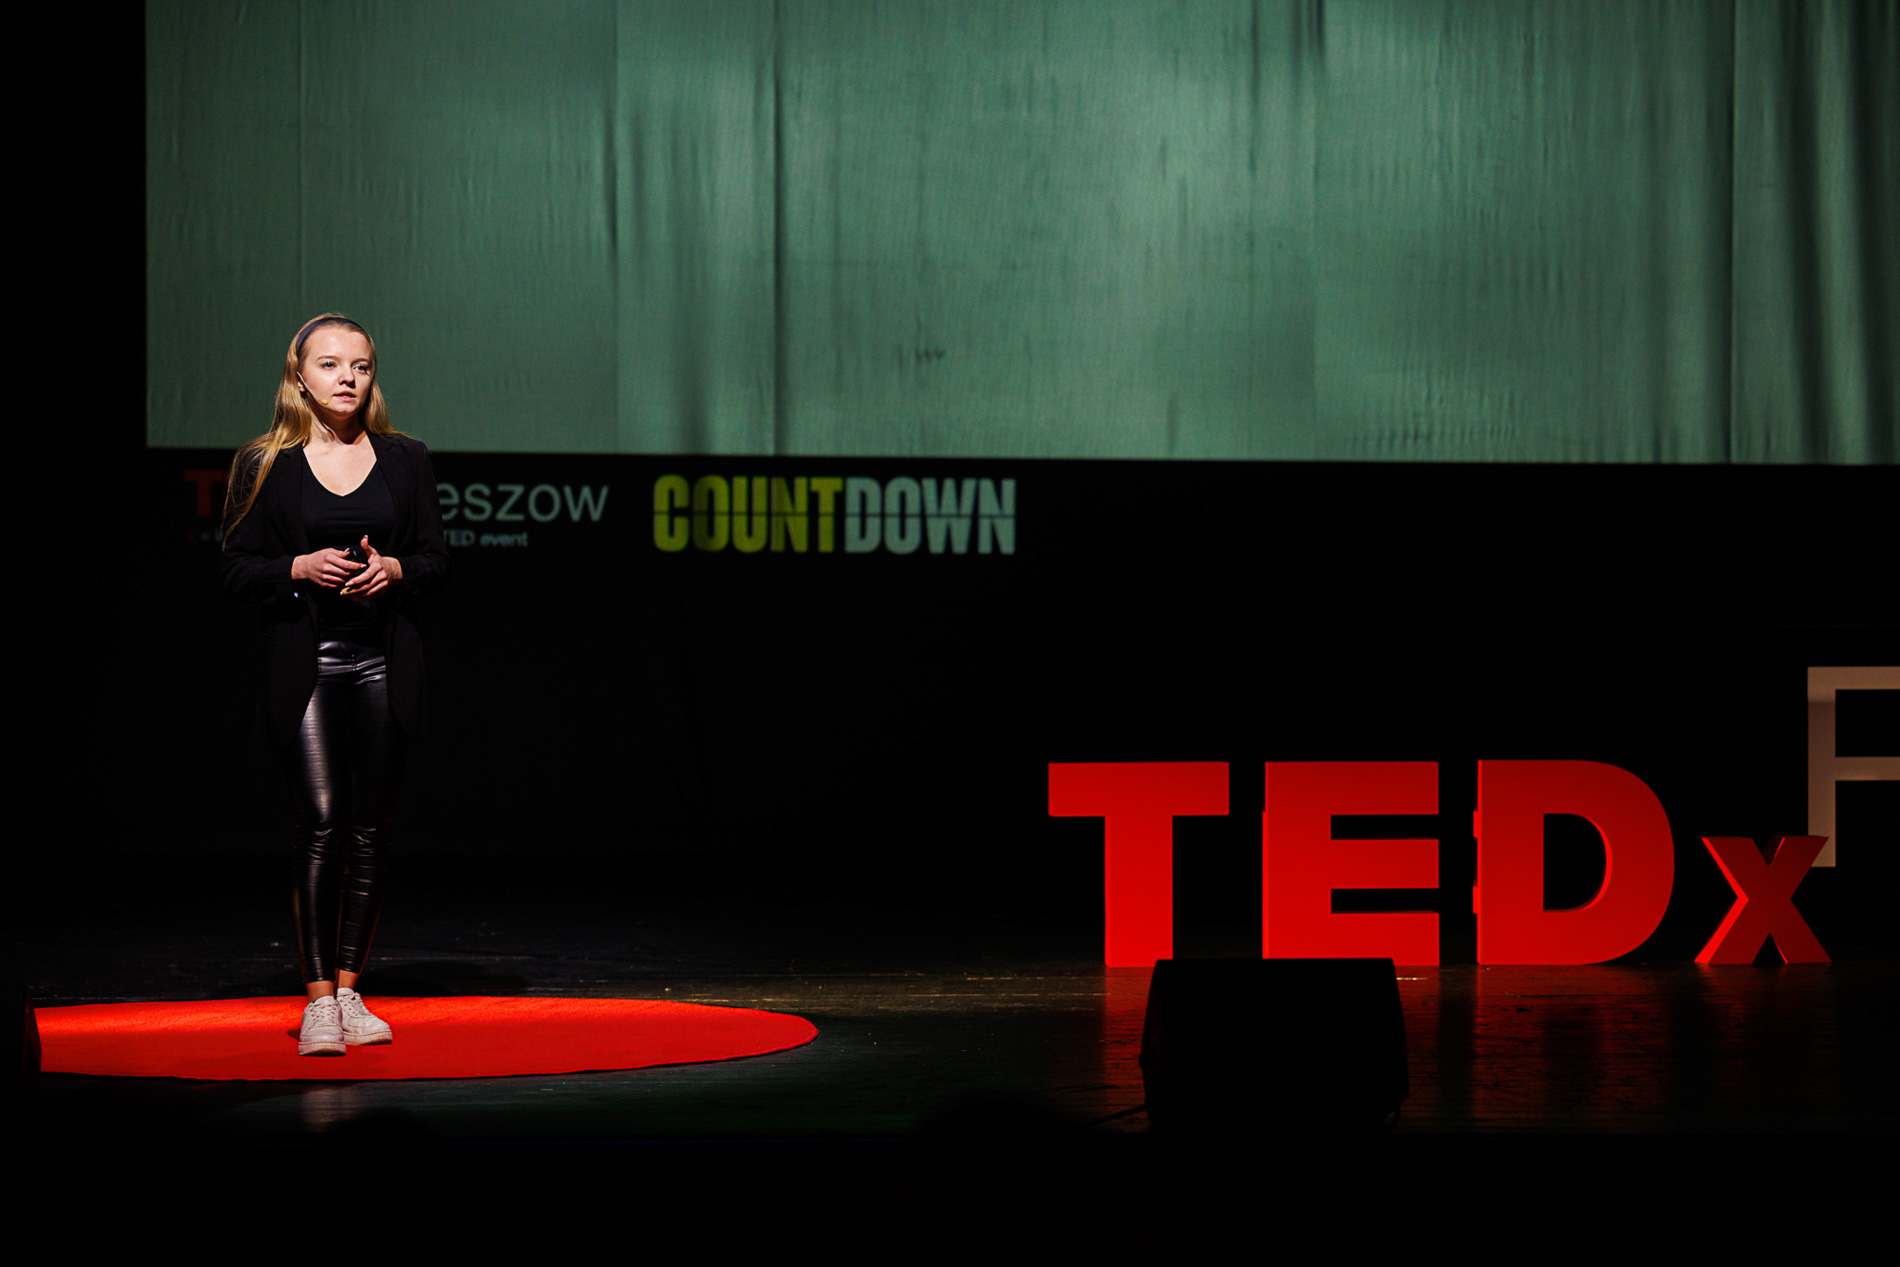 Prelegentka Martyna Łuszczek na scenie podczas wydarzenia TEDx Rzeszów Countdown WSIiZ